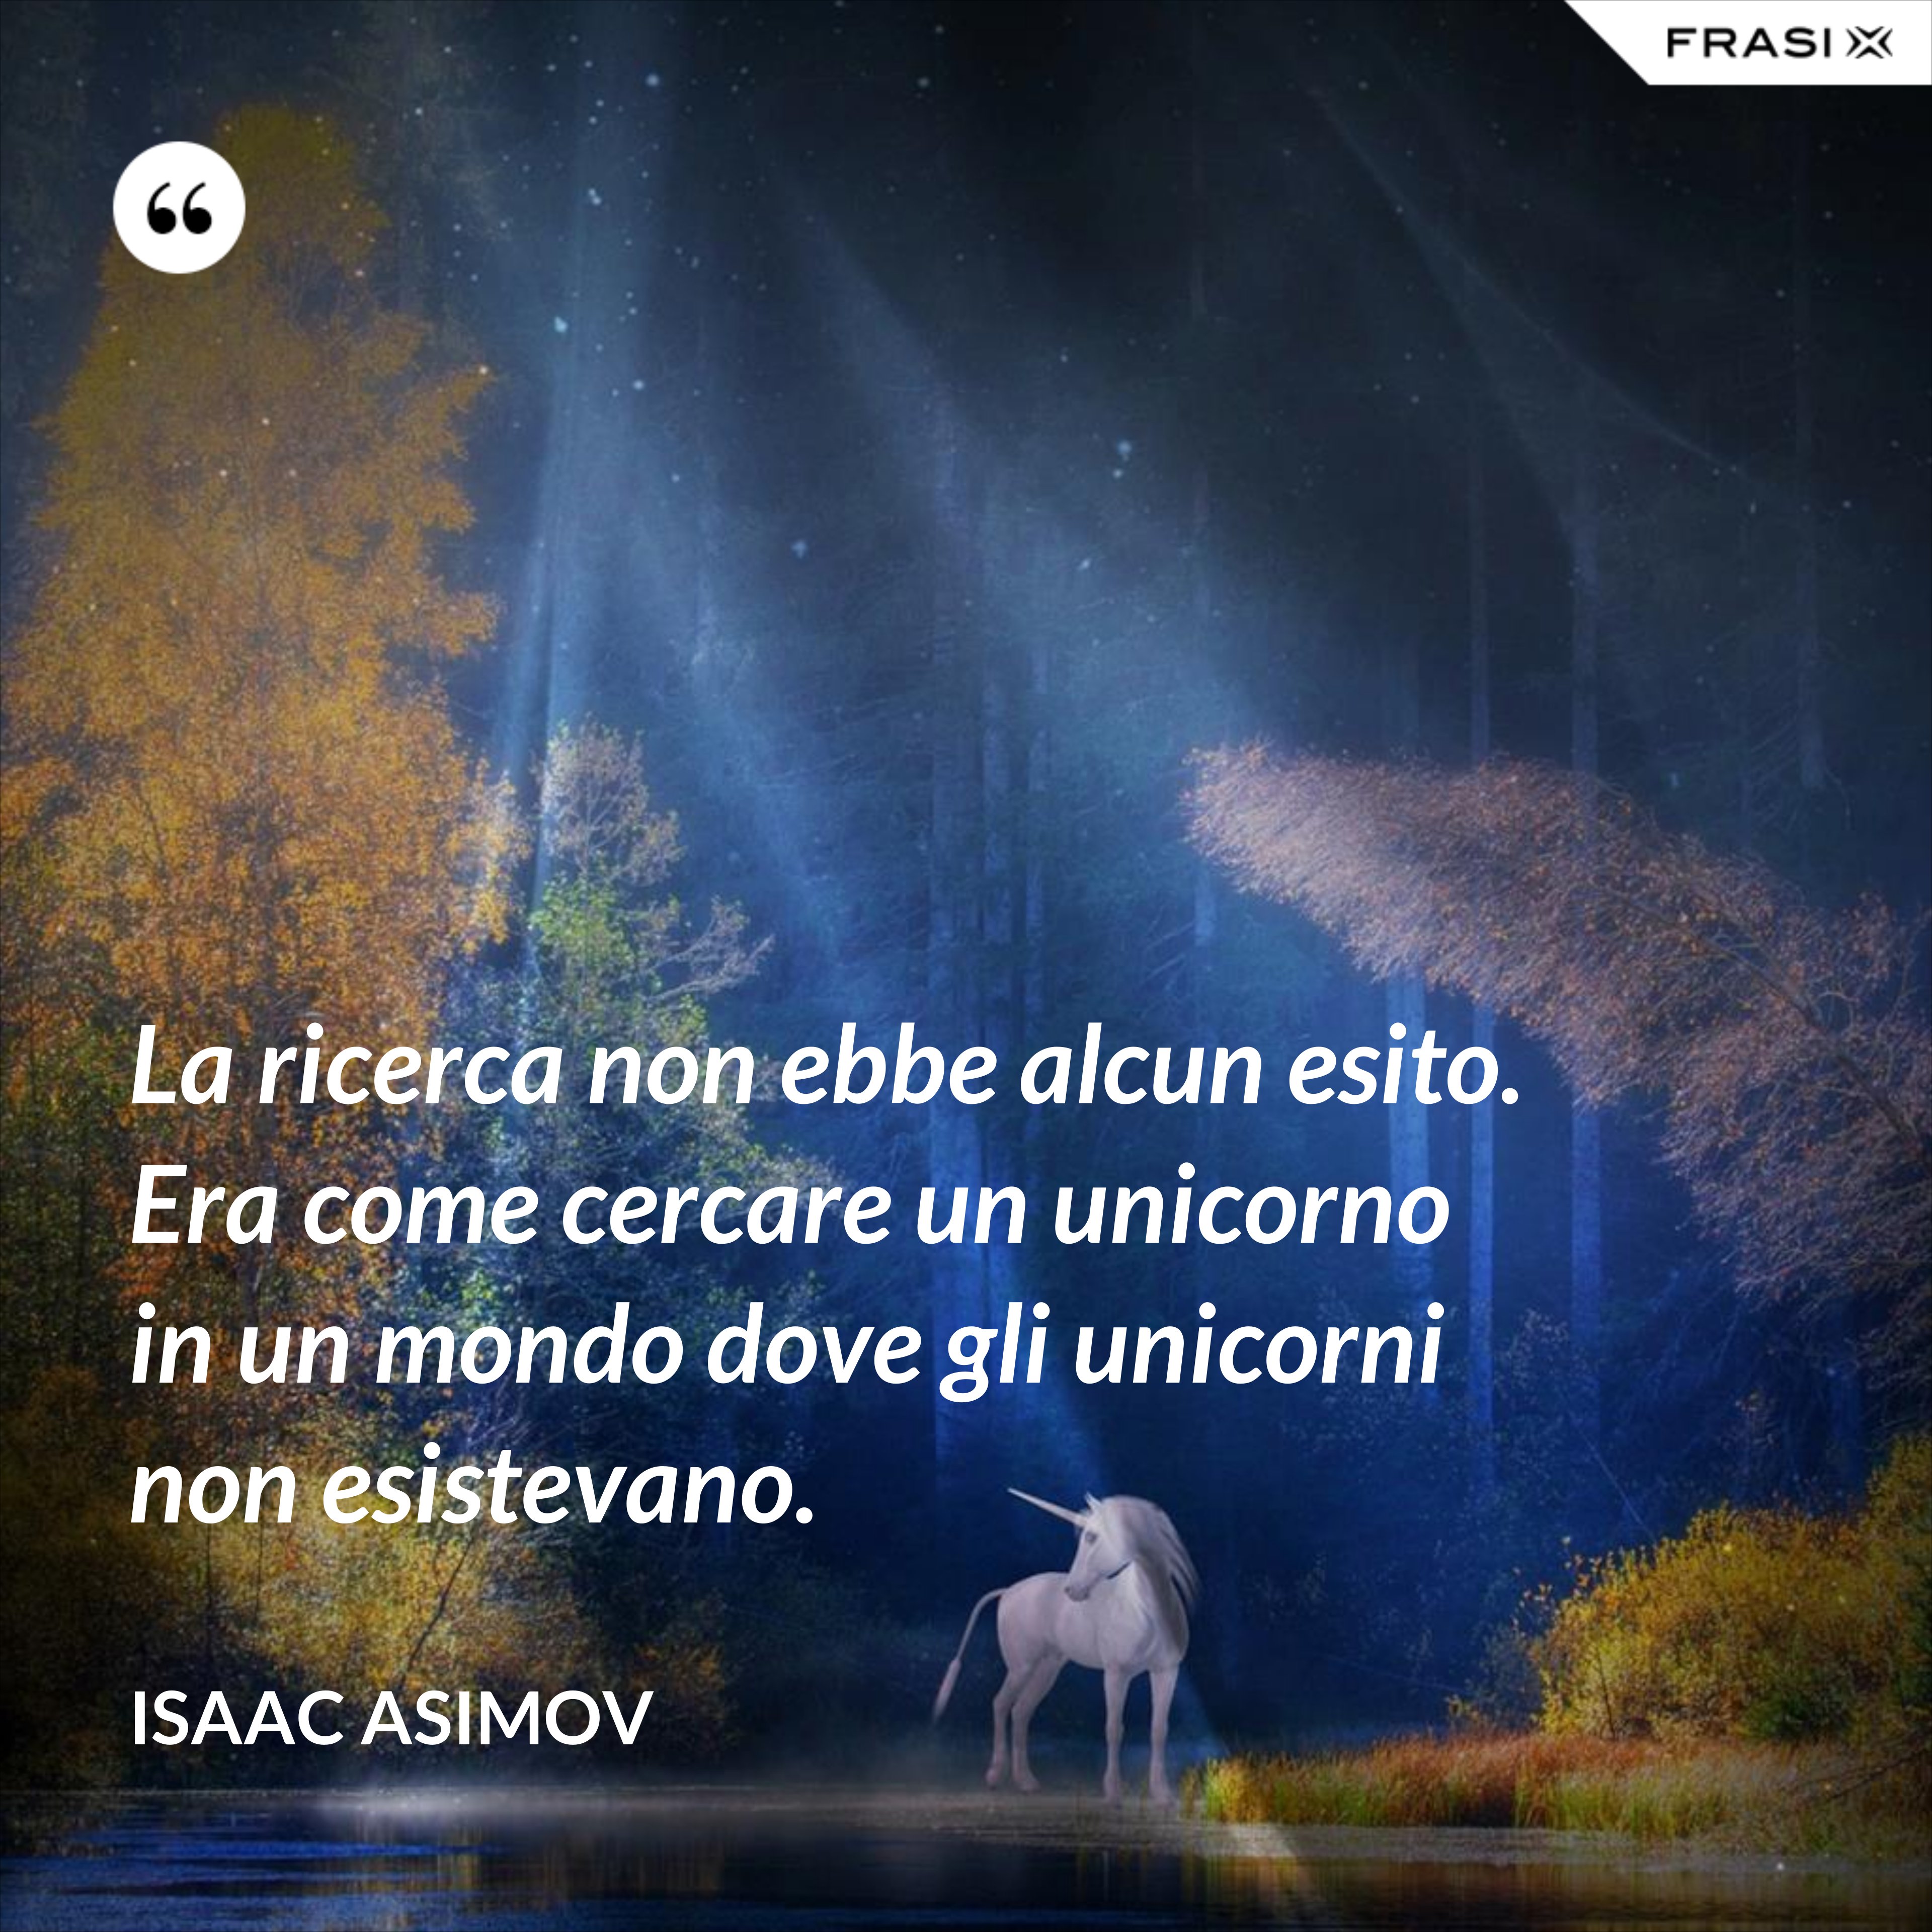 La ricerca non ebbe alcun esito. Era come cercare un unicorno in un mondo dove gli unicorni non esistevano. - Isaac Asimov